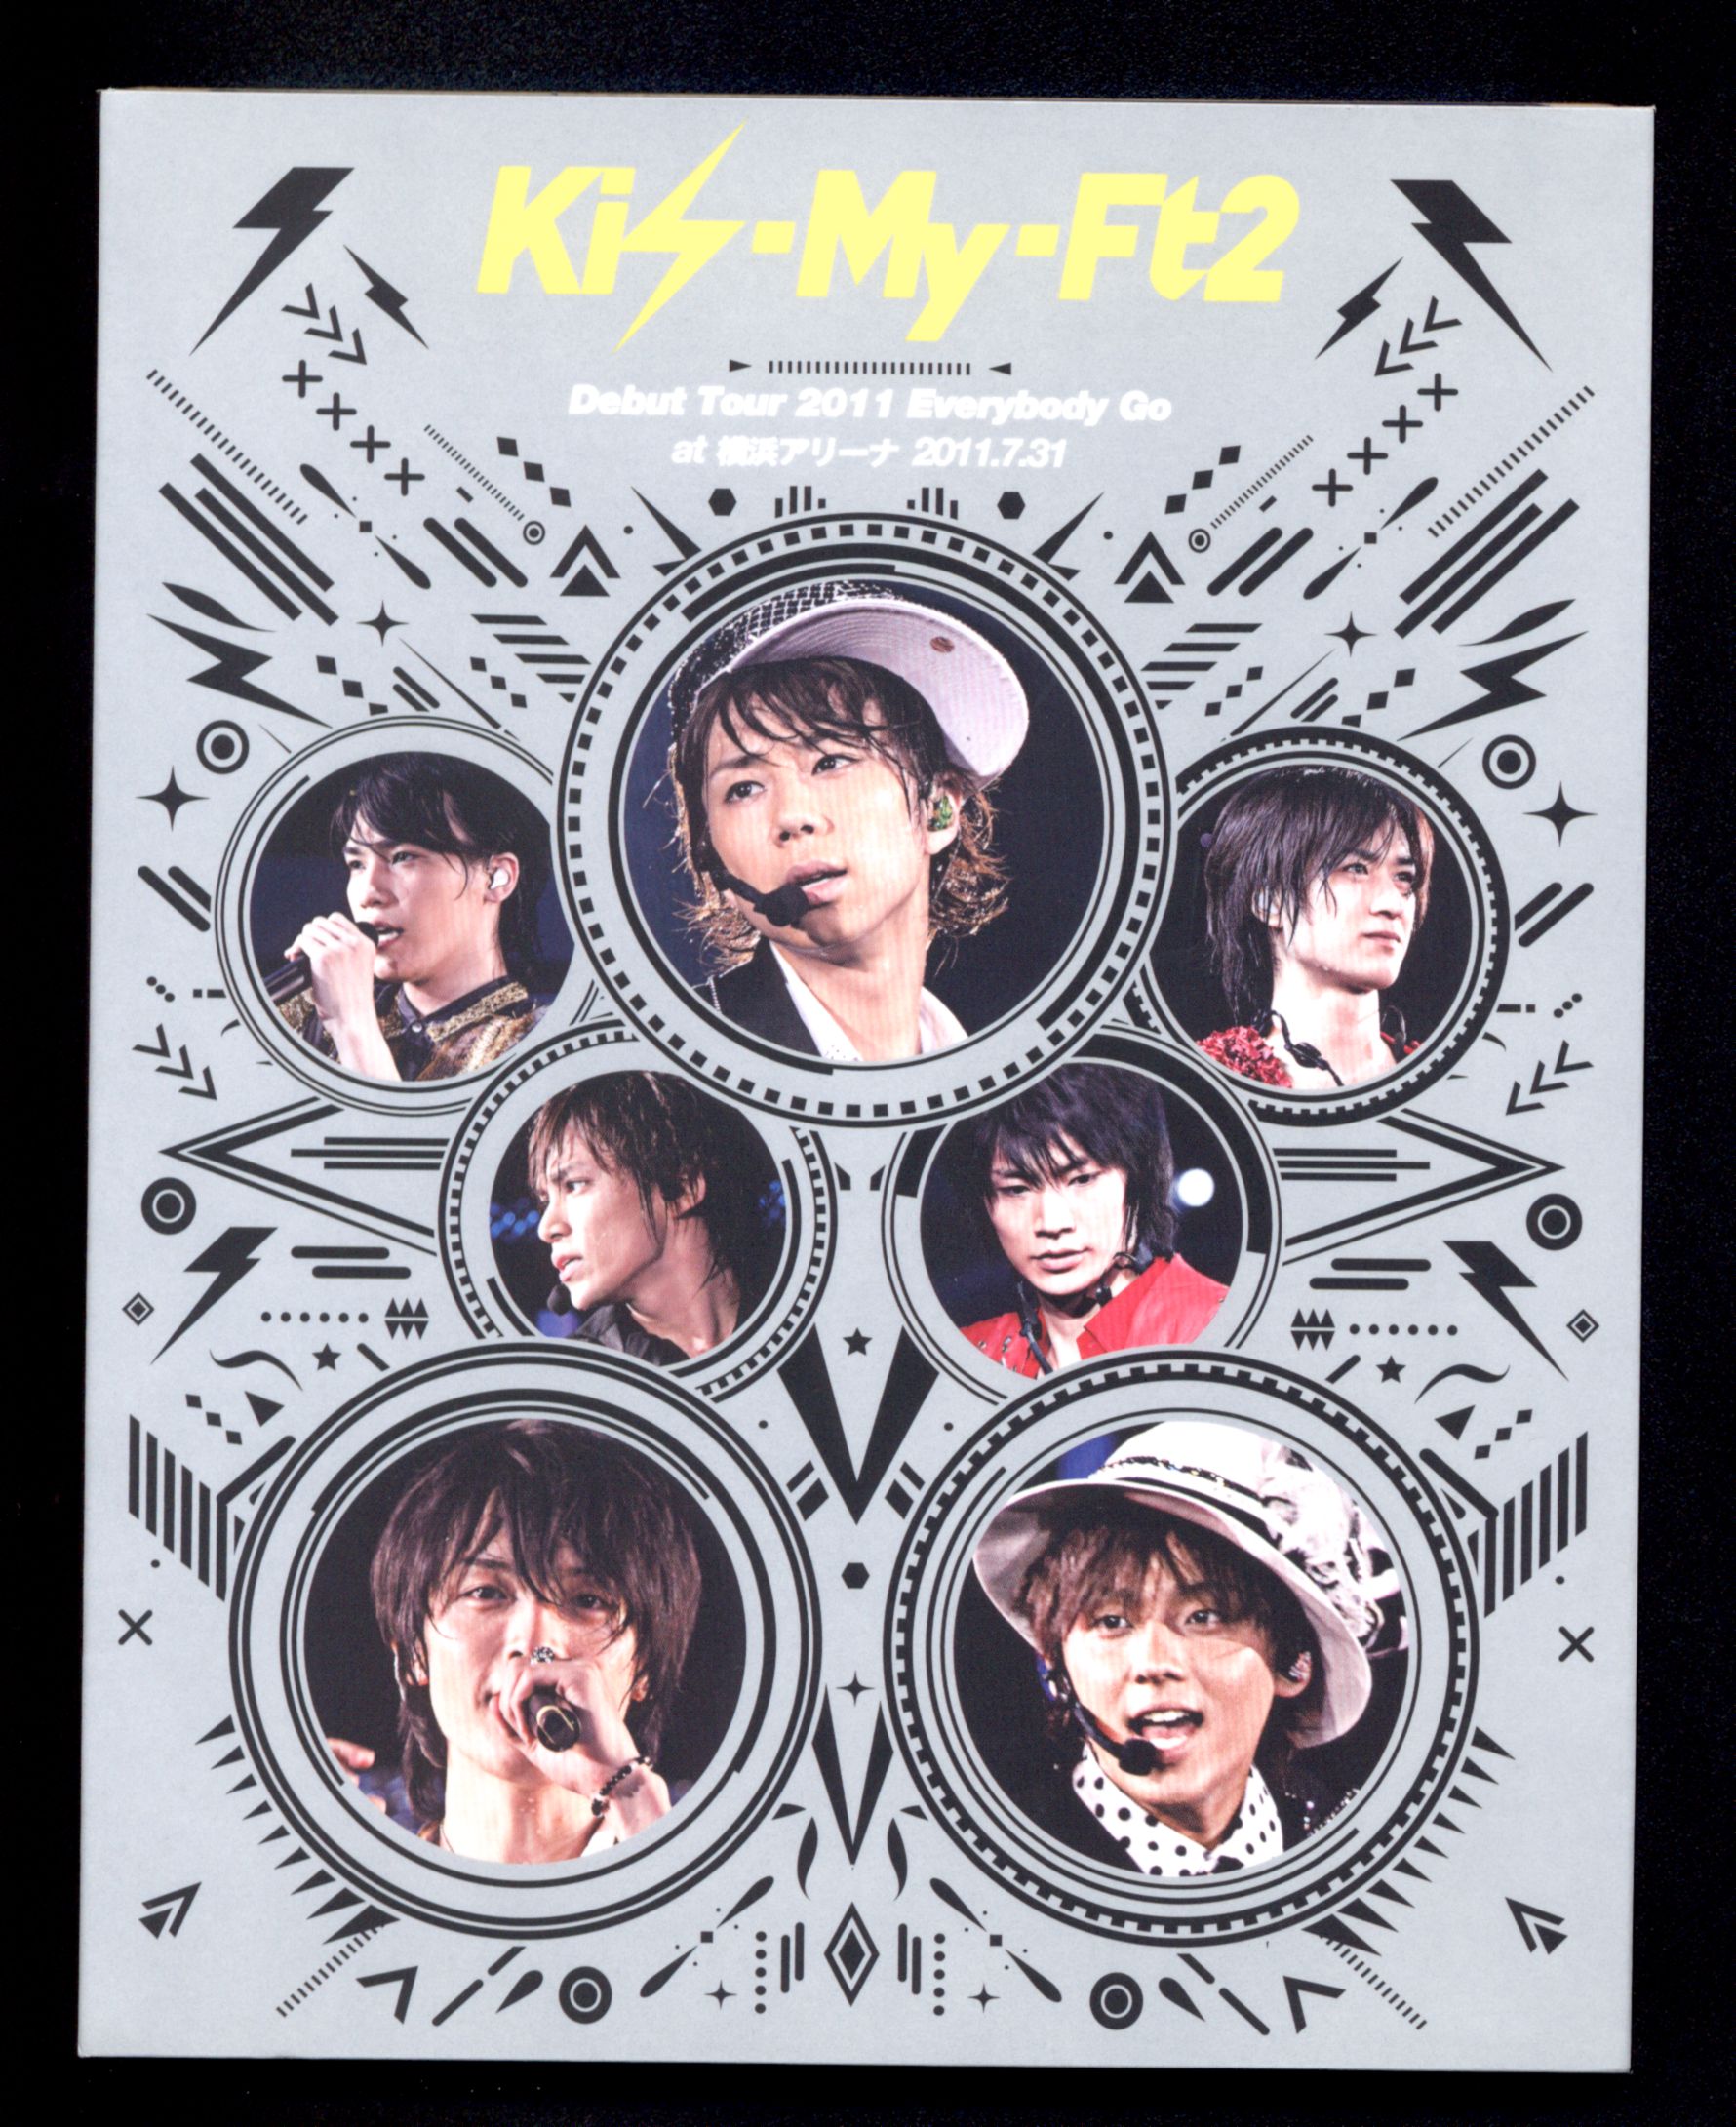 Kis-My-Ft2 Debut Tour 2011 Everybody GoDVD/ブルーレイ